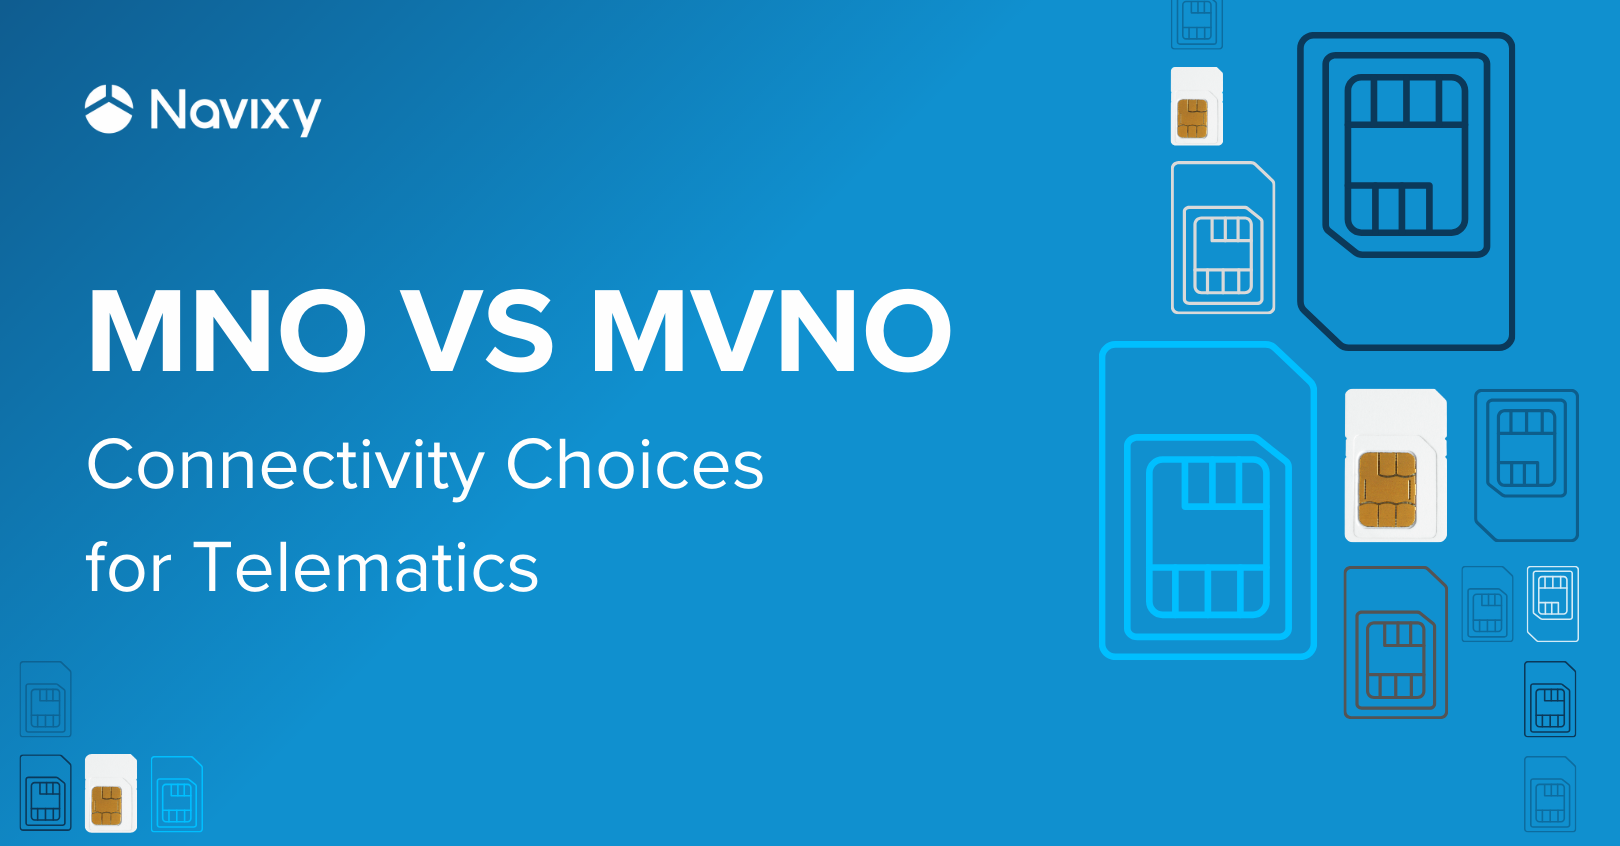 MNO vs MVNO: Connectivity Choices for Telematics